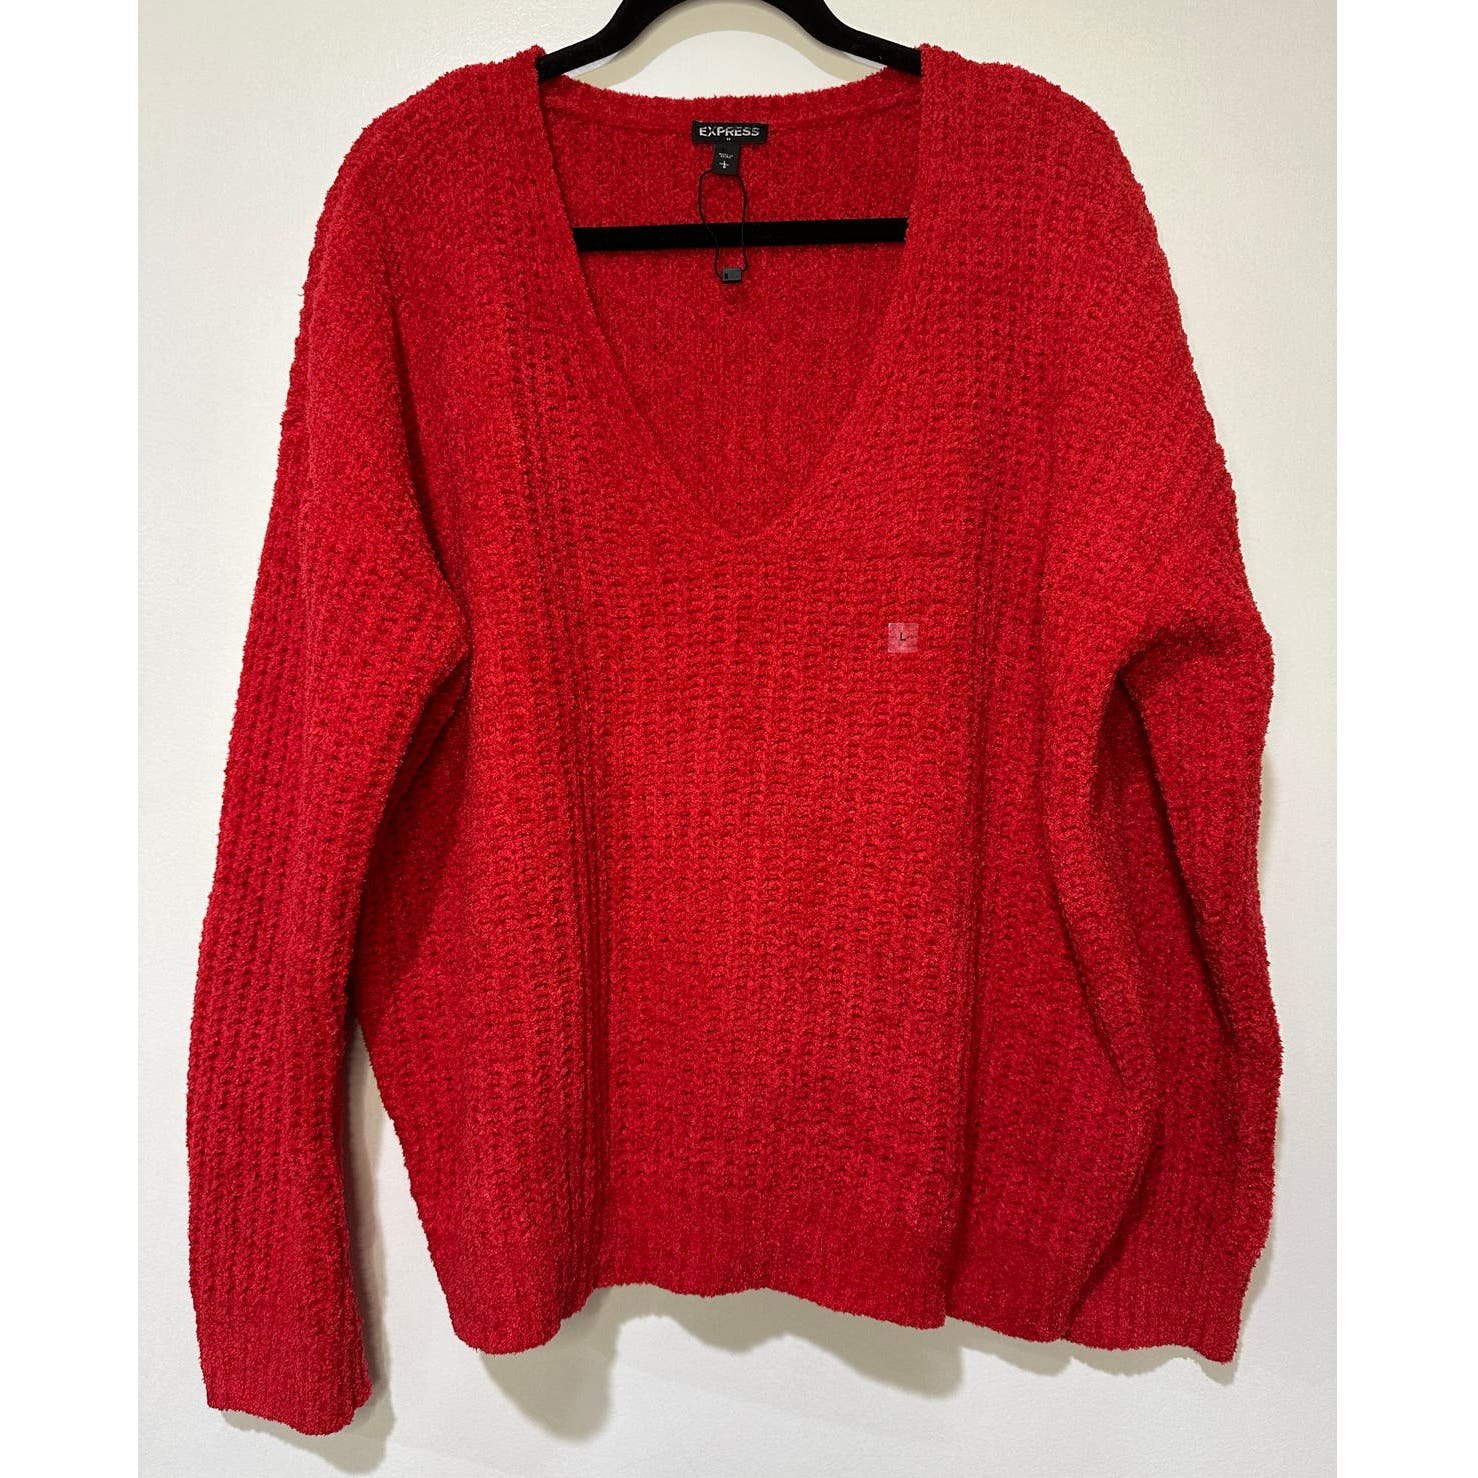 Stylish Express V-Neck Red Sweater Long Sleeves Oversiz